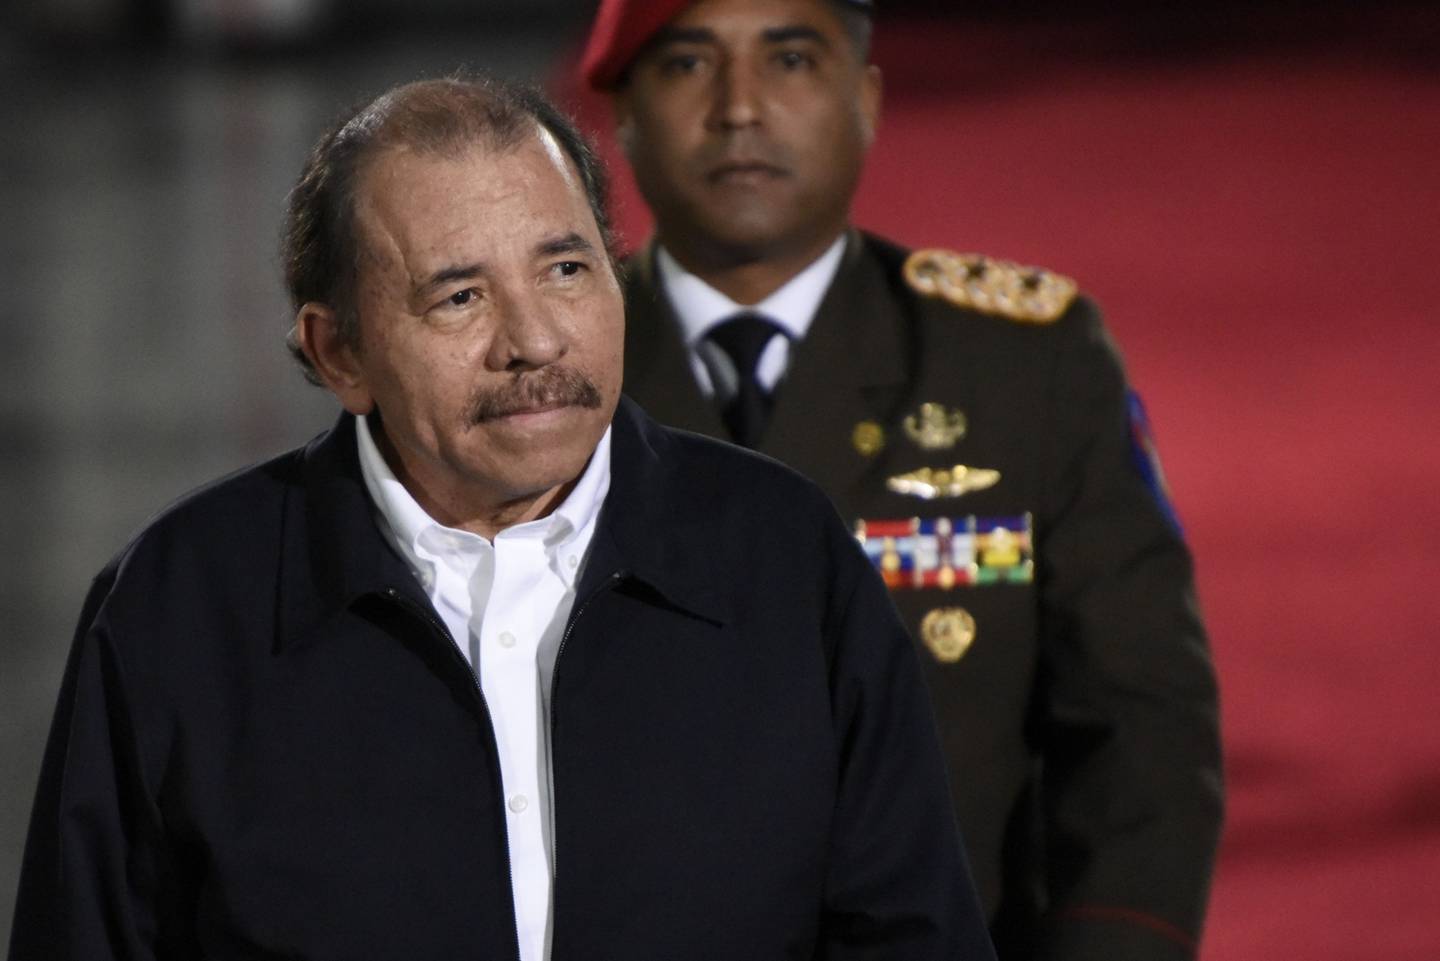 Daniel Ortega, presidente de Nicaragua, llega a la toma de posesión de Nicolás Maduro, presidente de Venezuela, en Caracas, Venezuela, el jueves 10 de enero de 2019.